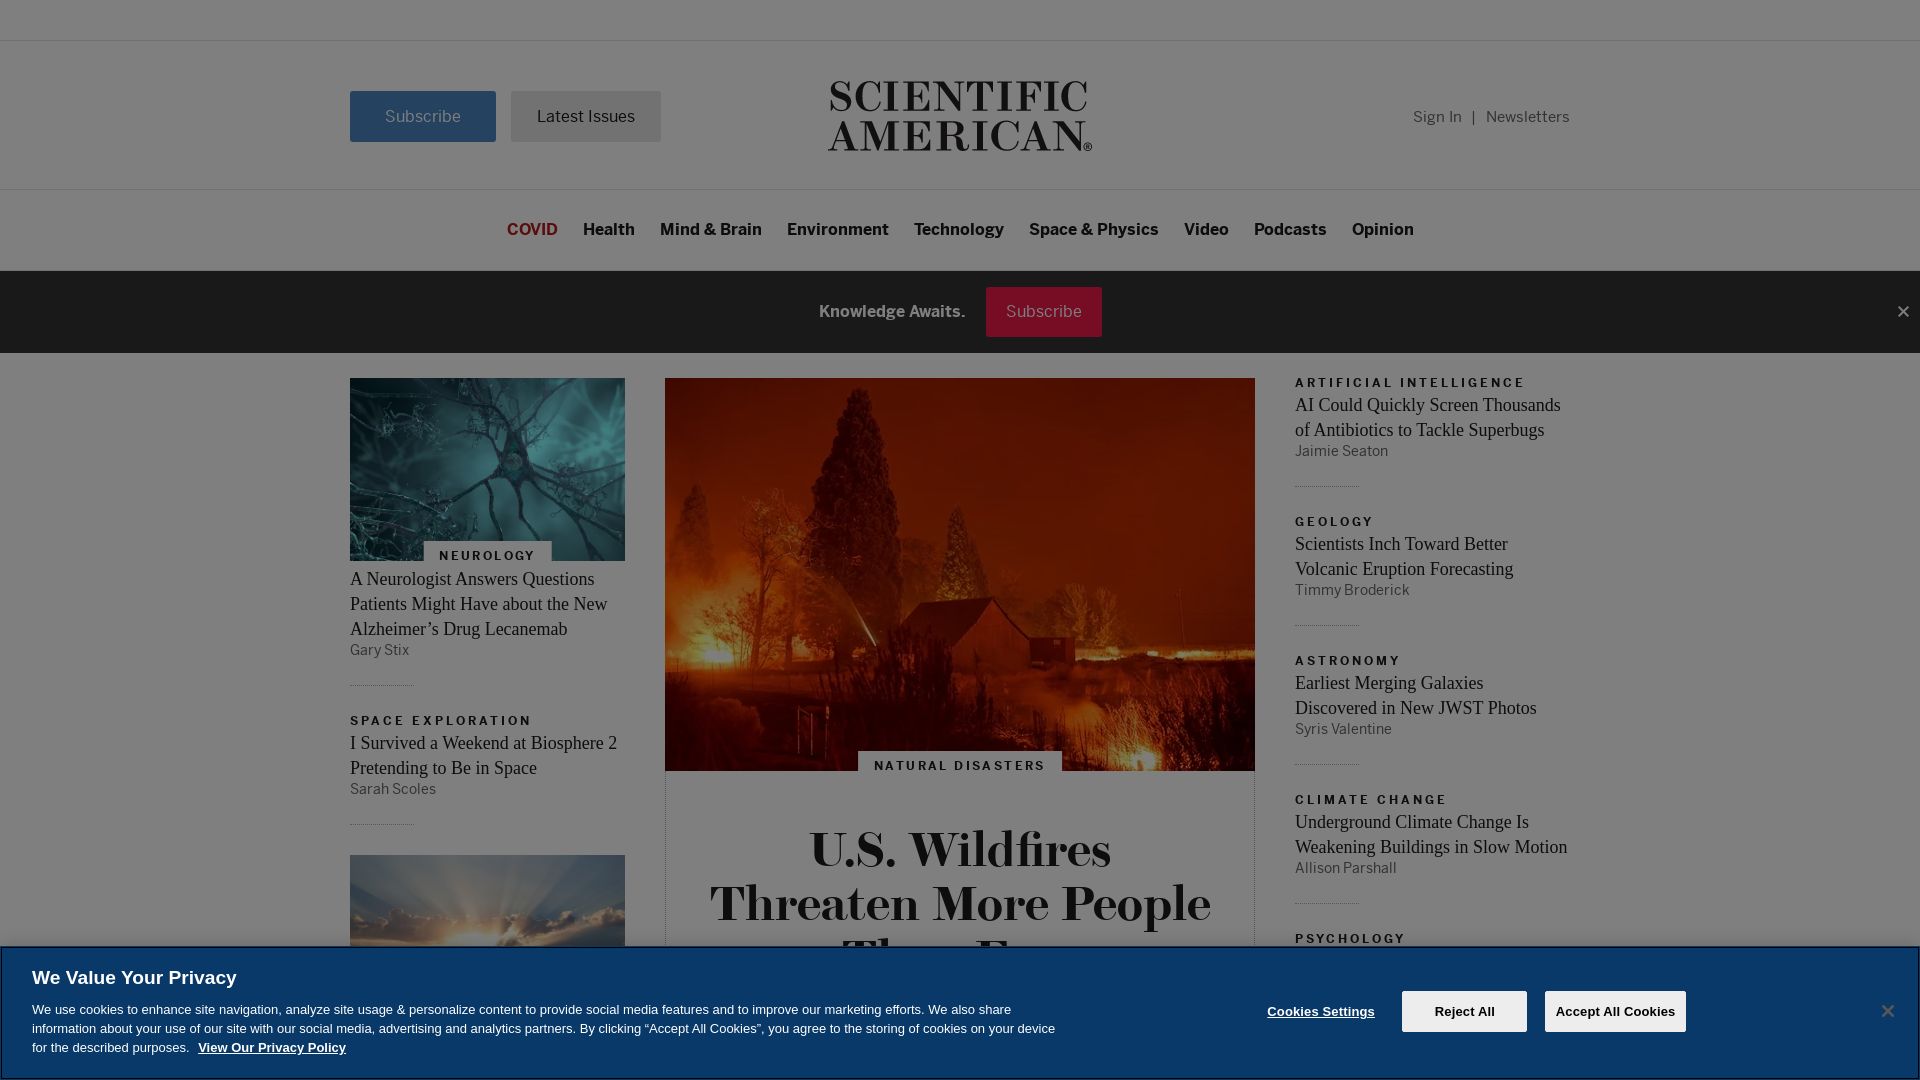 Website status scientificamerican.com is   ONLINE